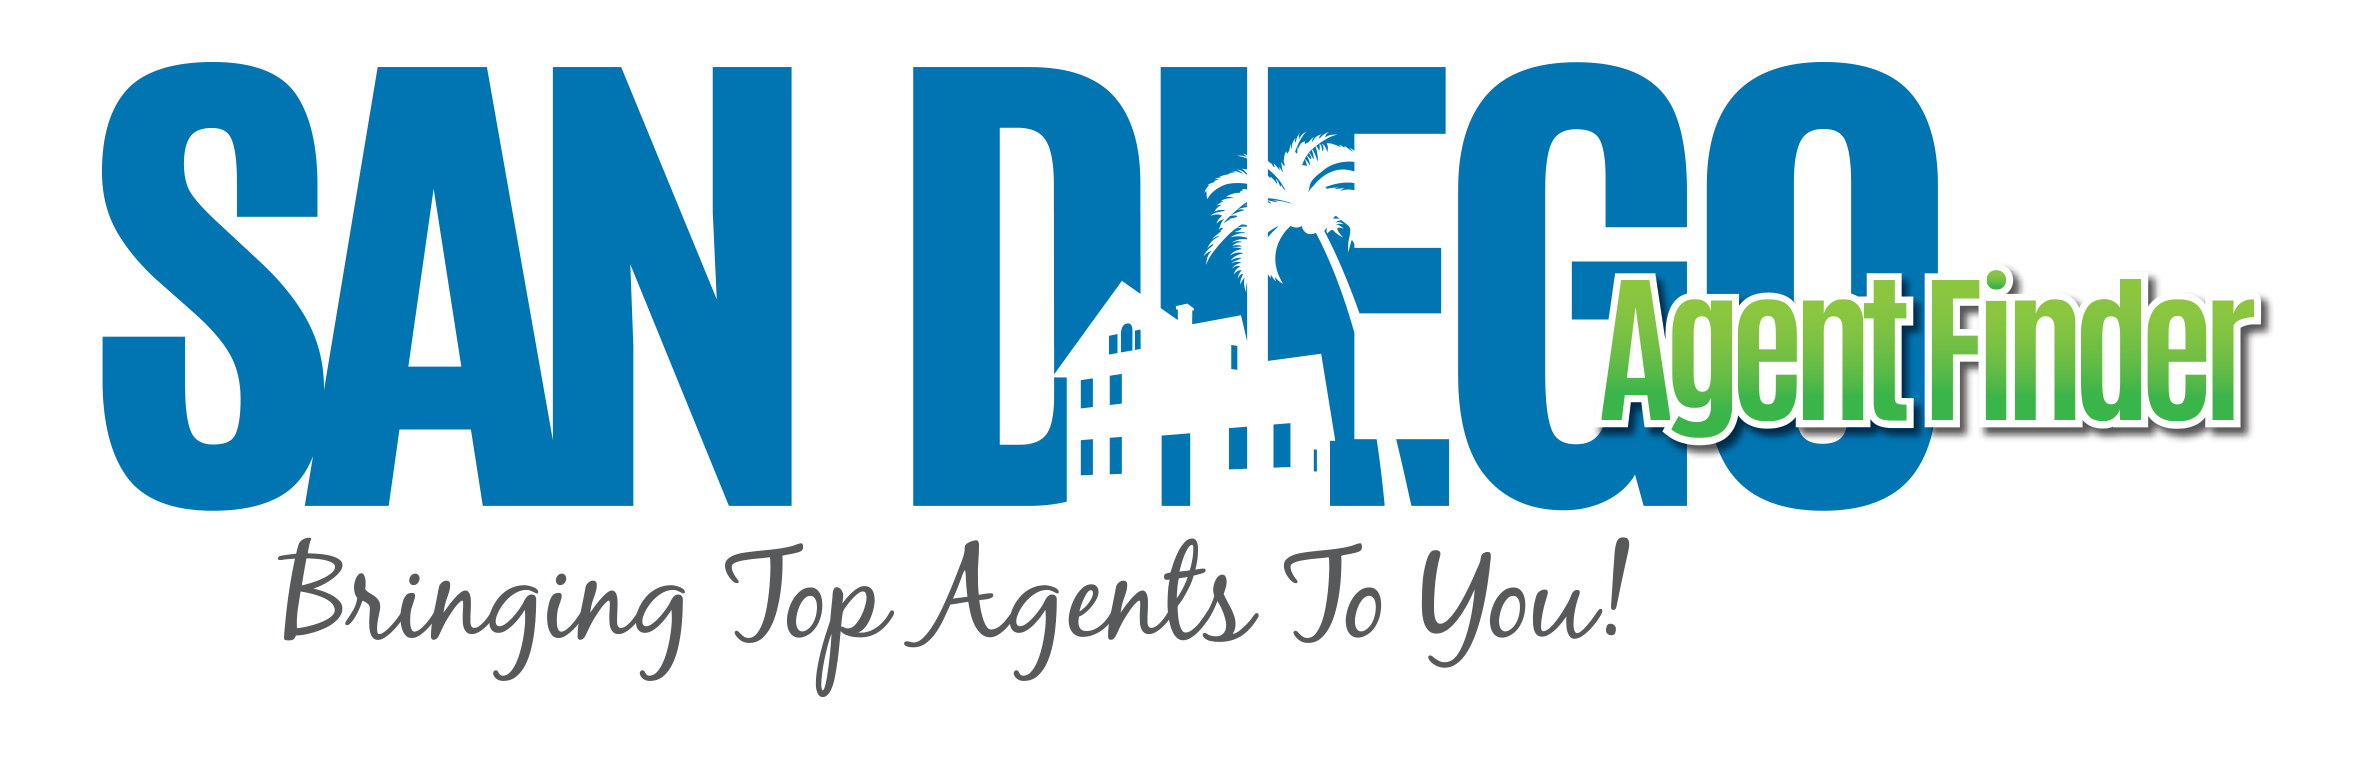 San Diego Agent Finder Logo